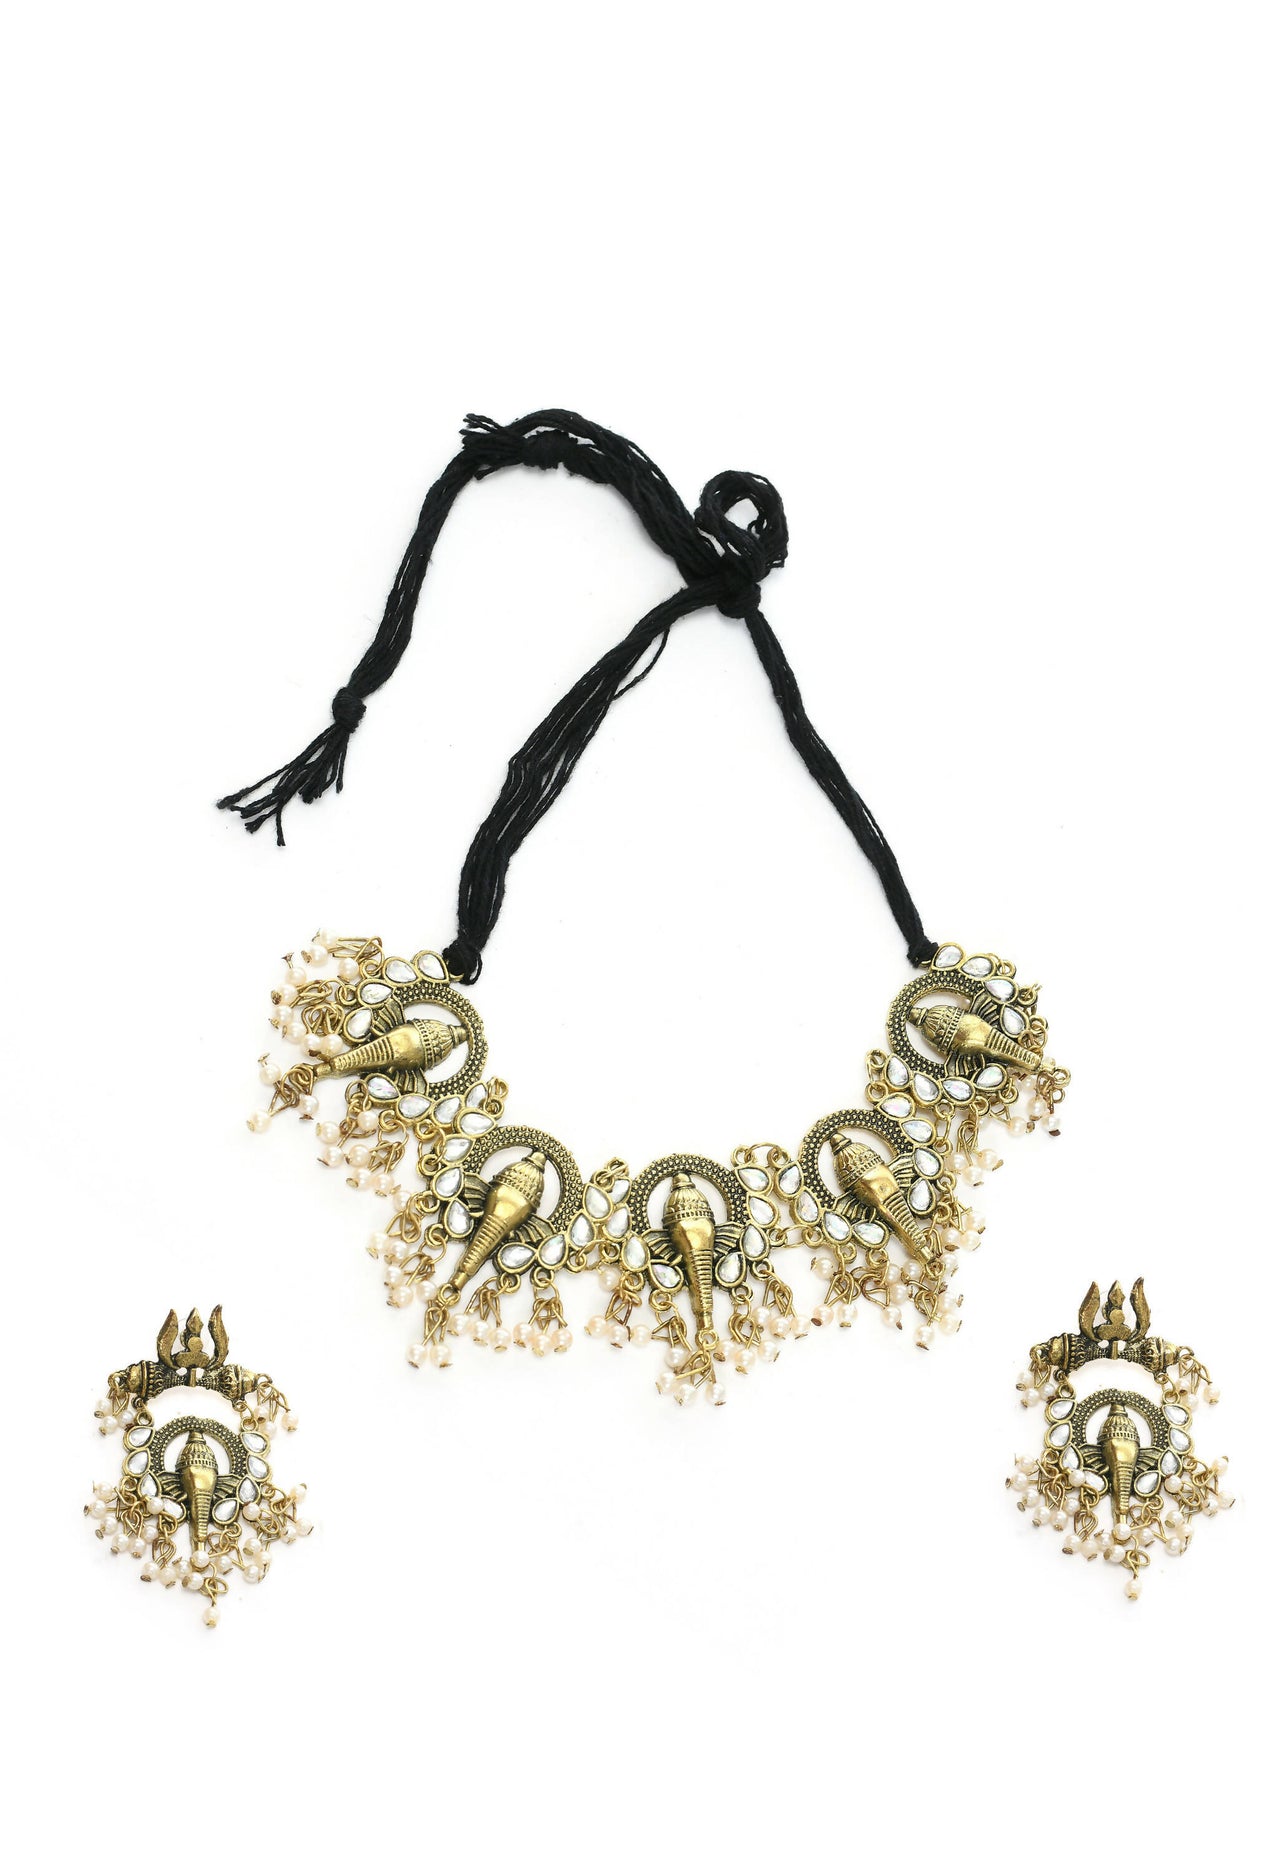 Mominos Fashion Johar Kamal Oxidised Gold-Plated Ganesha Design Necklace Choker Set - Distacart